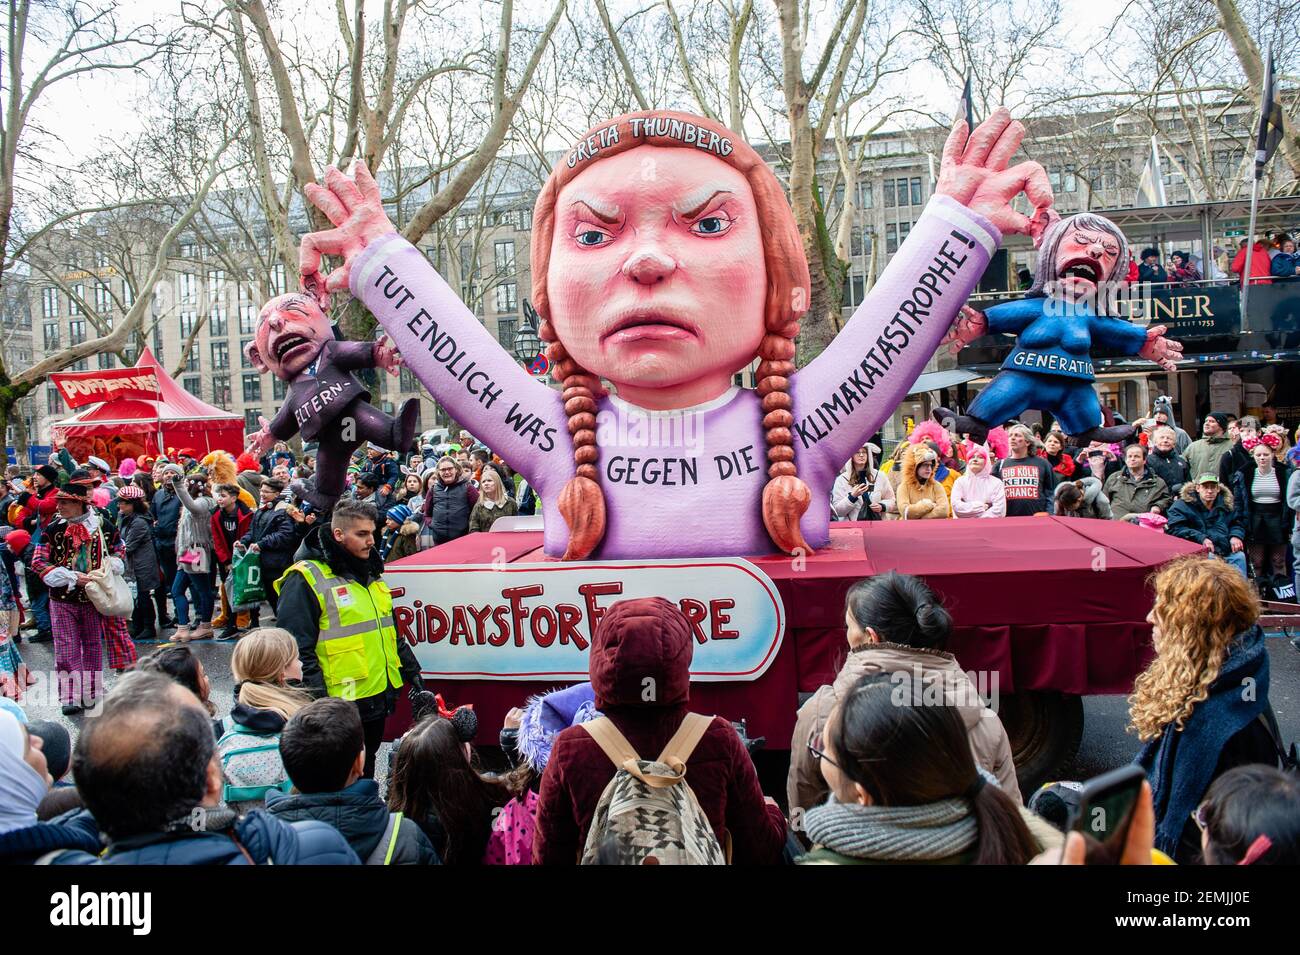 Figura del activista Greta Thunberg se ve en una de las carrozas de  temática política del satírico Jacques Tilly durante el carnaval. En  Düsseldorf, el calendario de eventos de Carnaval incluye no